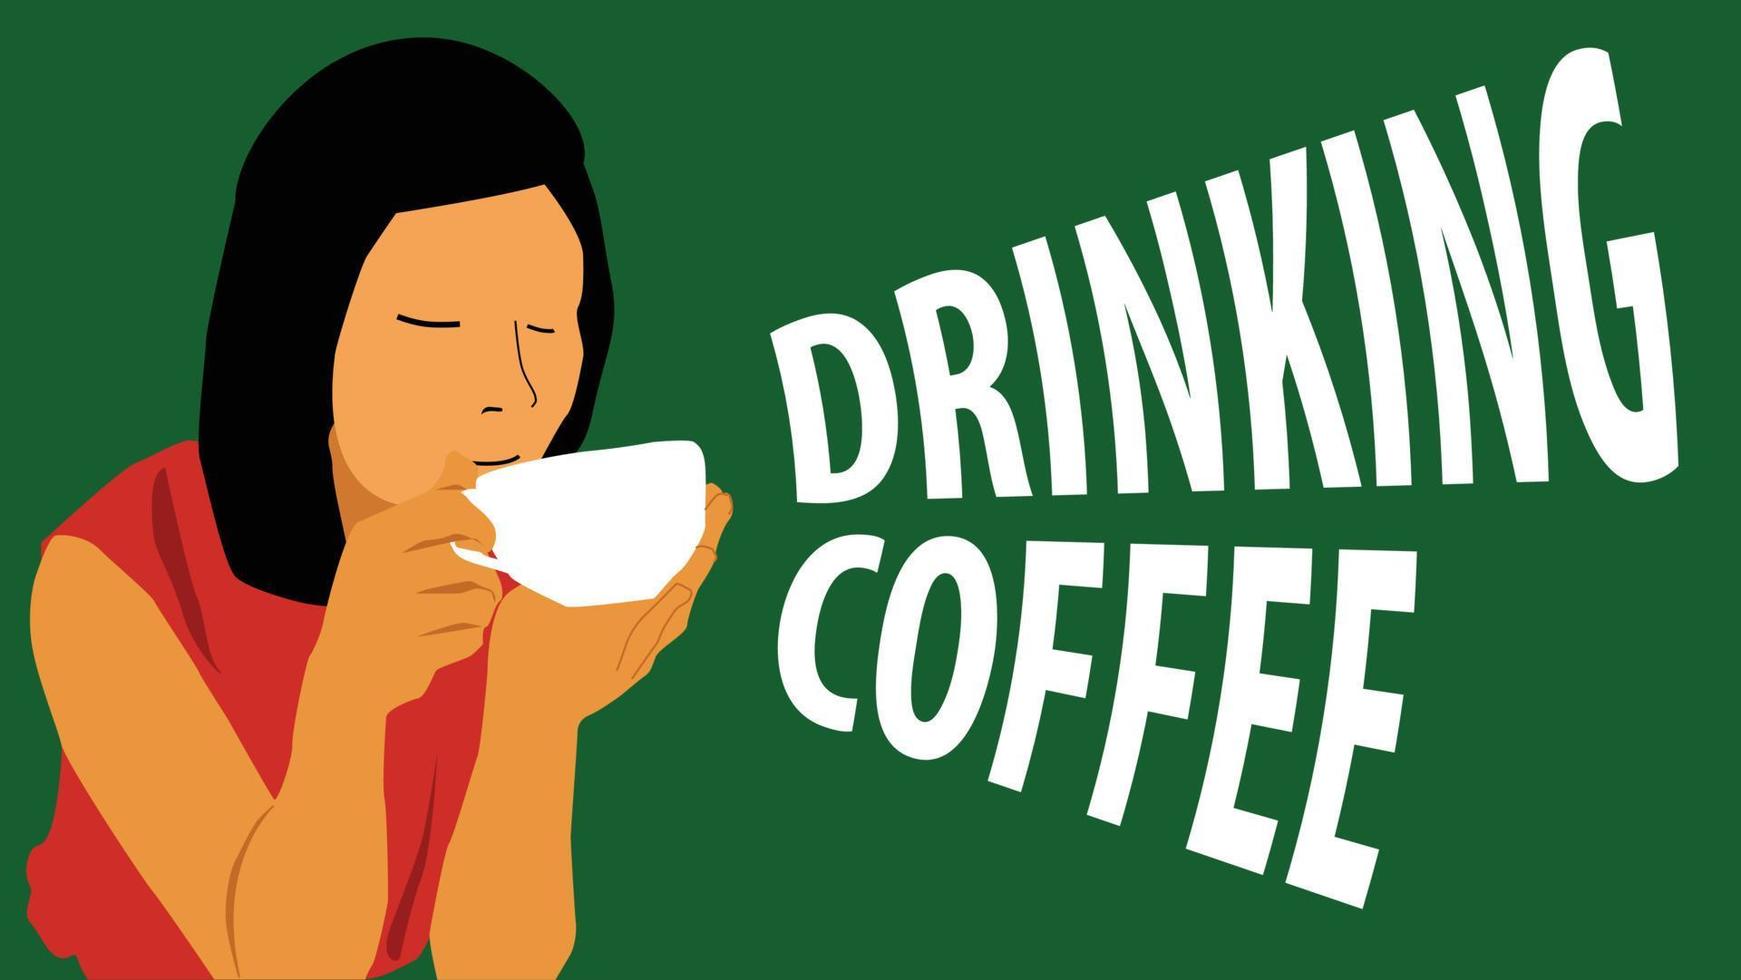 koffie drinken cartoon vector